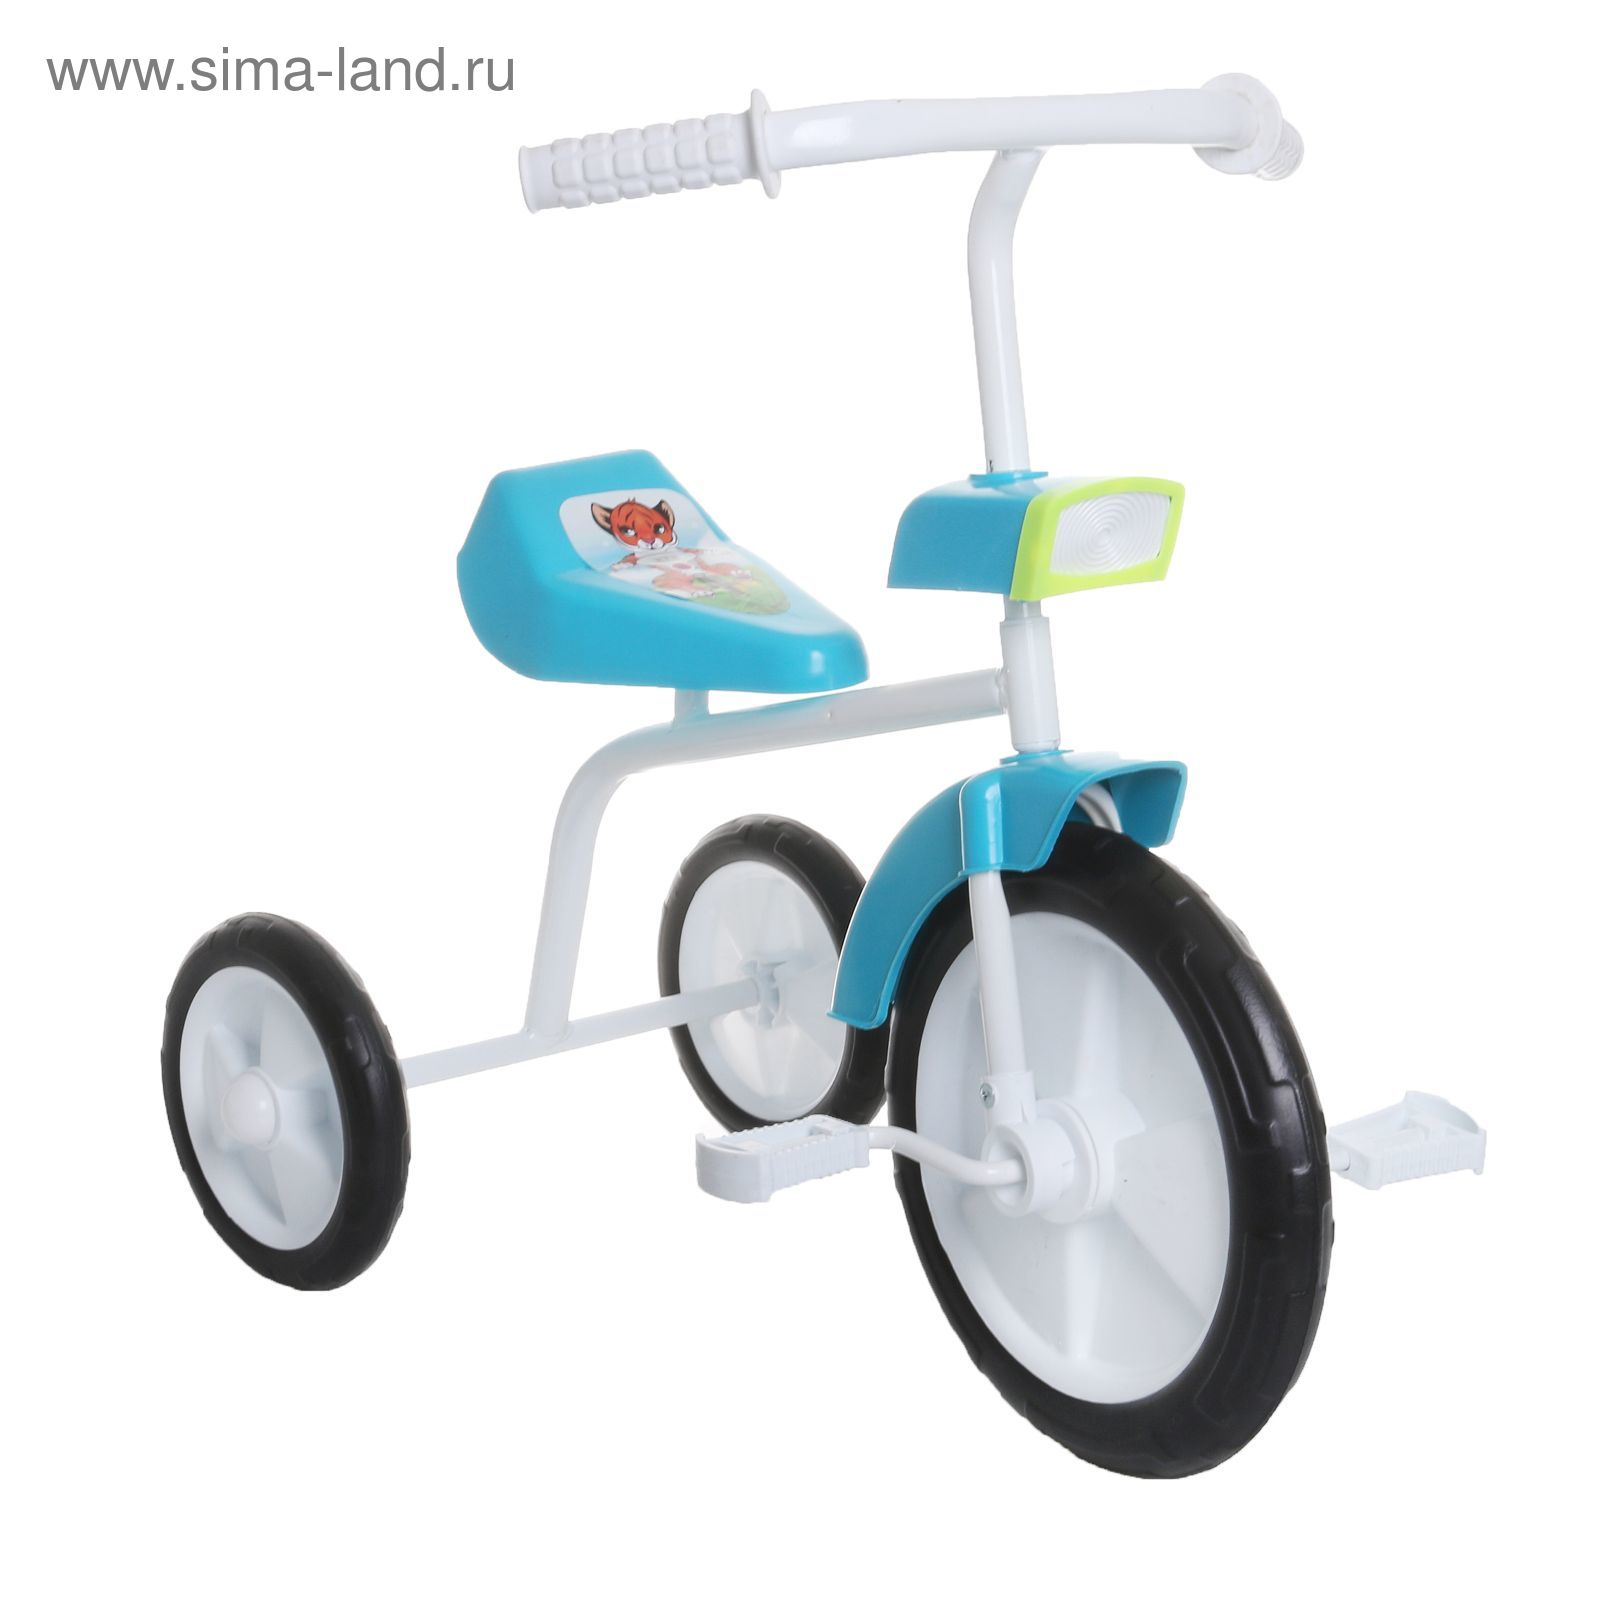 Велосипед трехколесный  "Малыш"  01Ф, цвет синий, фасовка: 1шт.